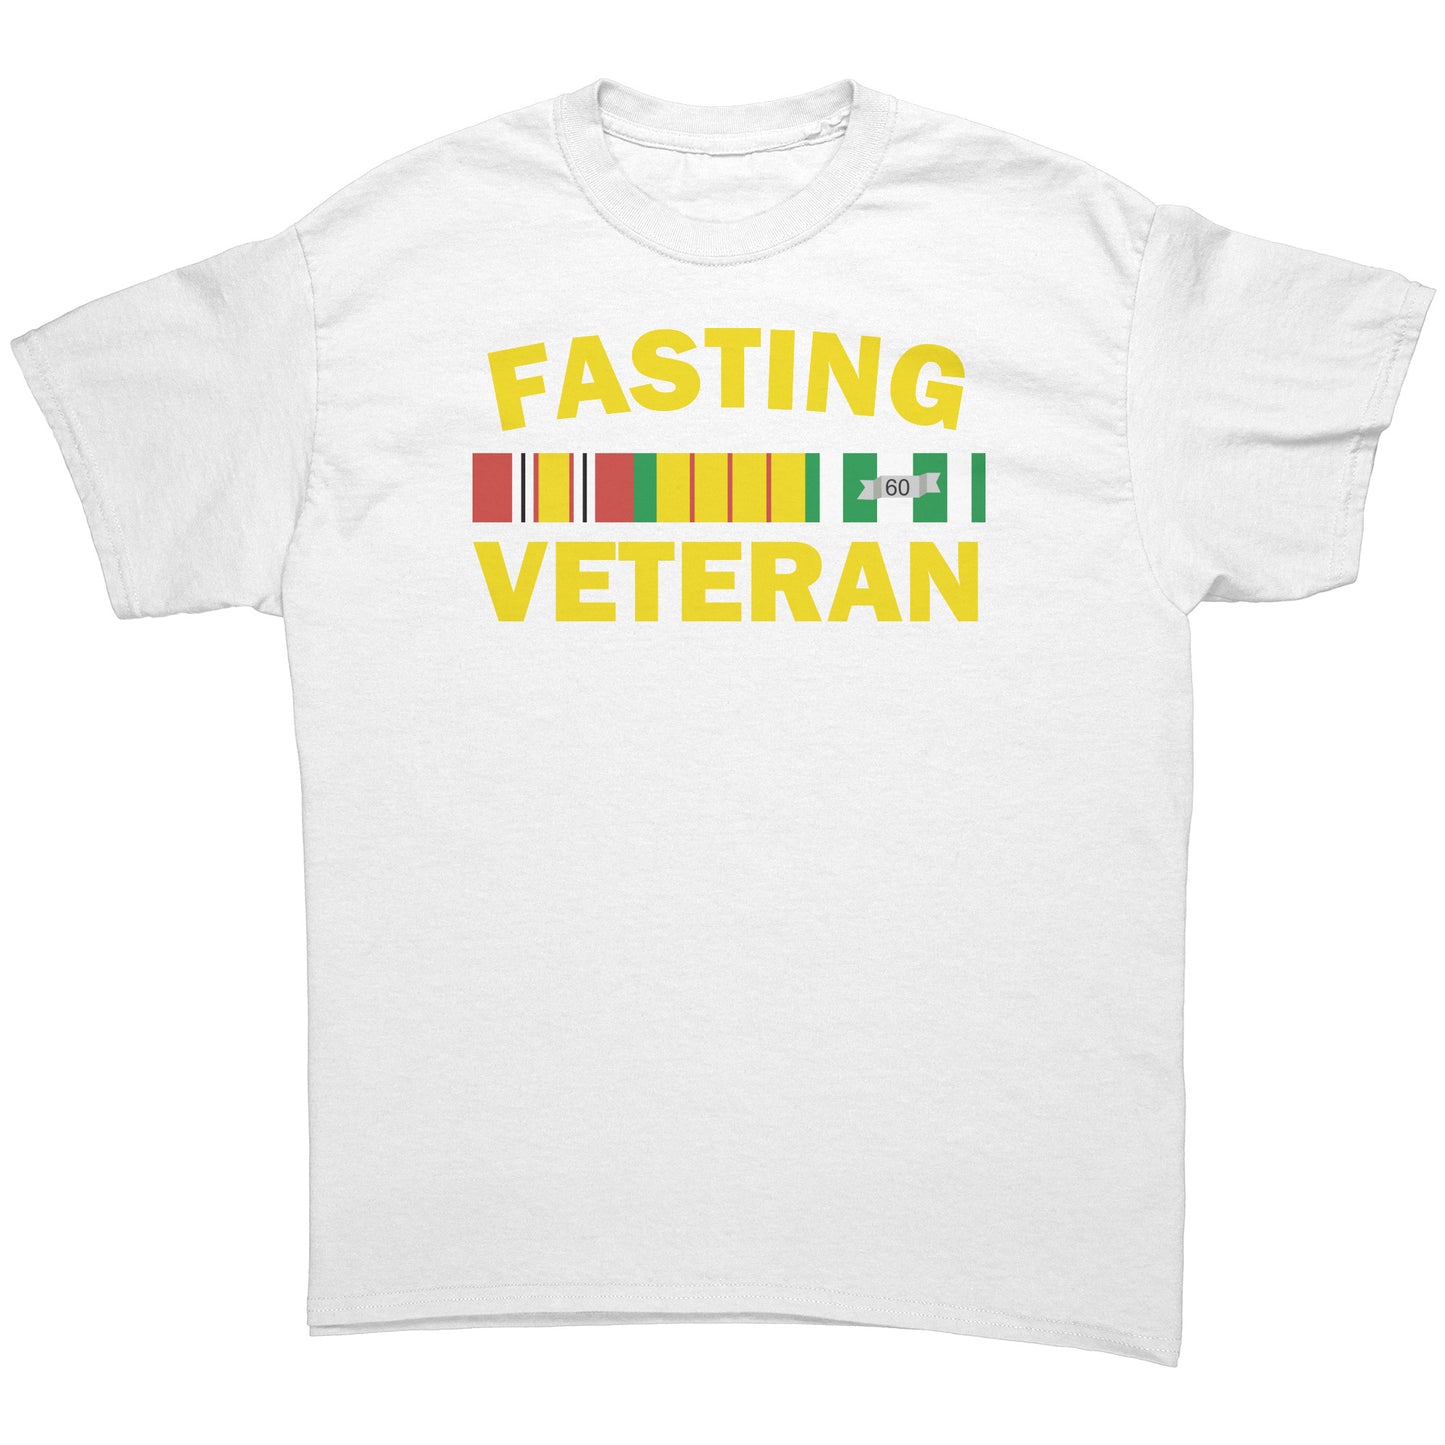 Fasting Veteran Men's T-Shirt